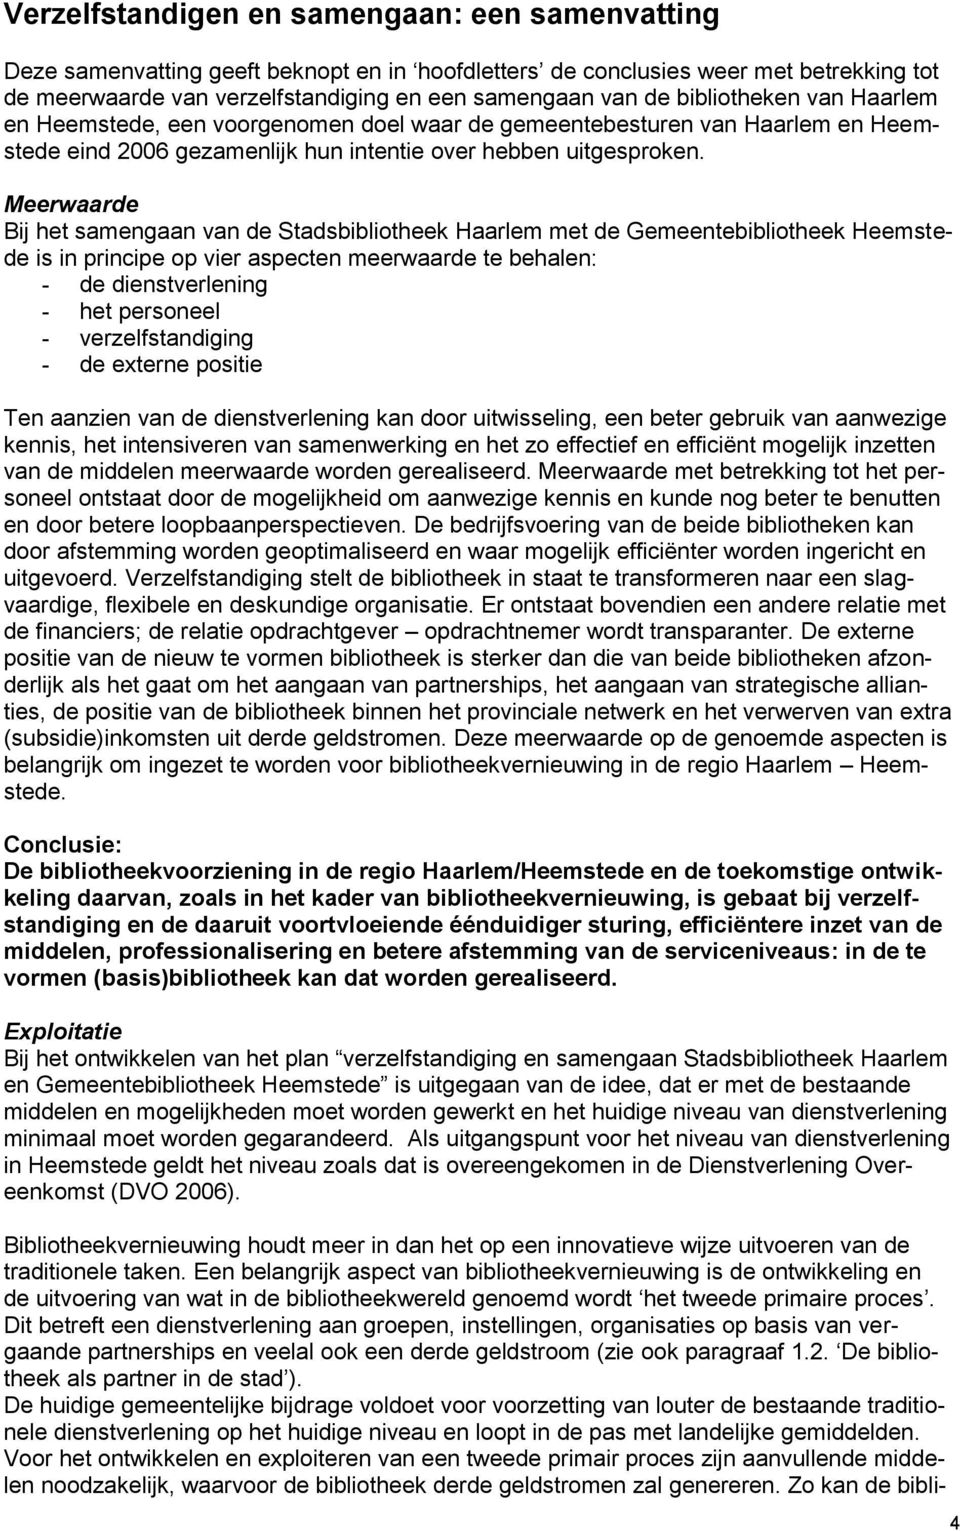 Meerwaarde Bij het samengaan van de Stadsbibliotheek Haarlem met de Gemeentebibliotheek Heemstede is in principe op vier aspecten meerwaarde te behalen: - de dienstverlening - het personeel -